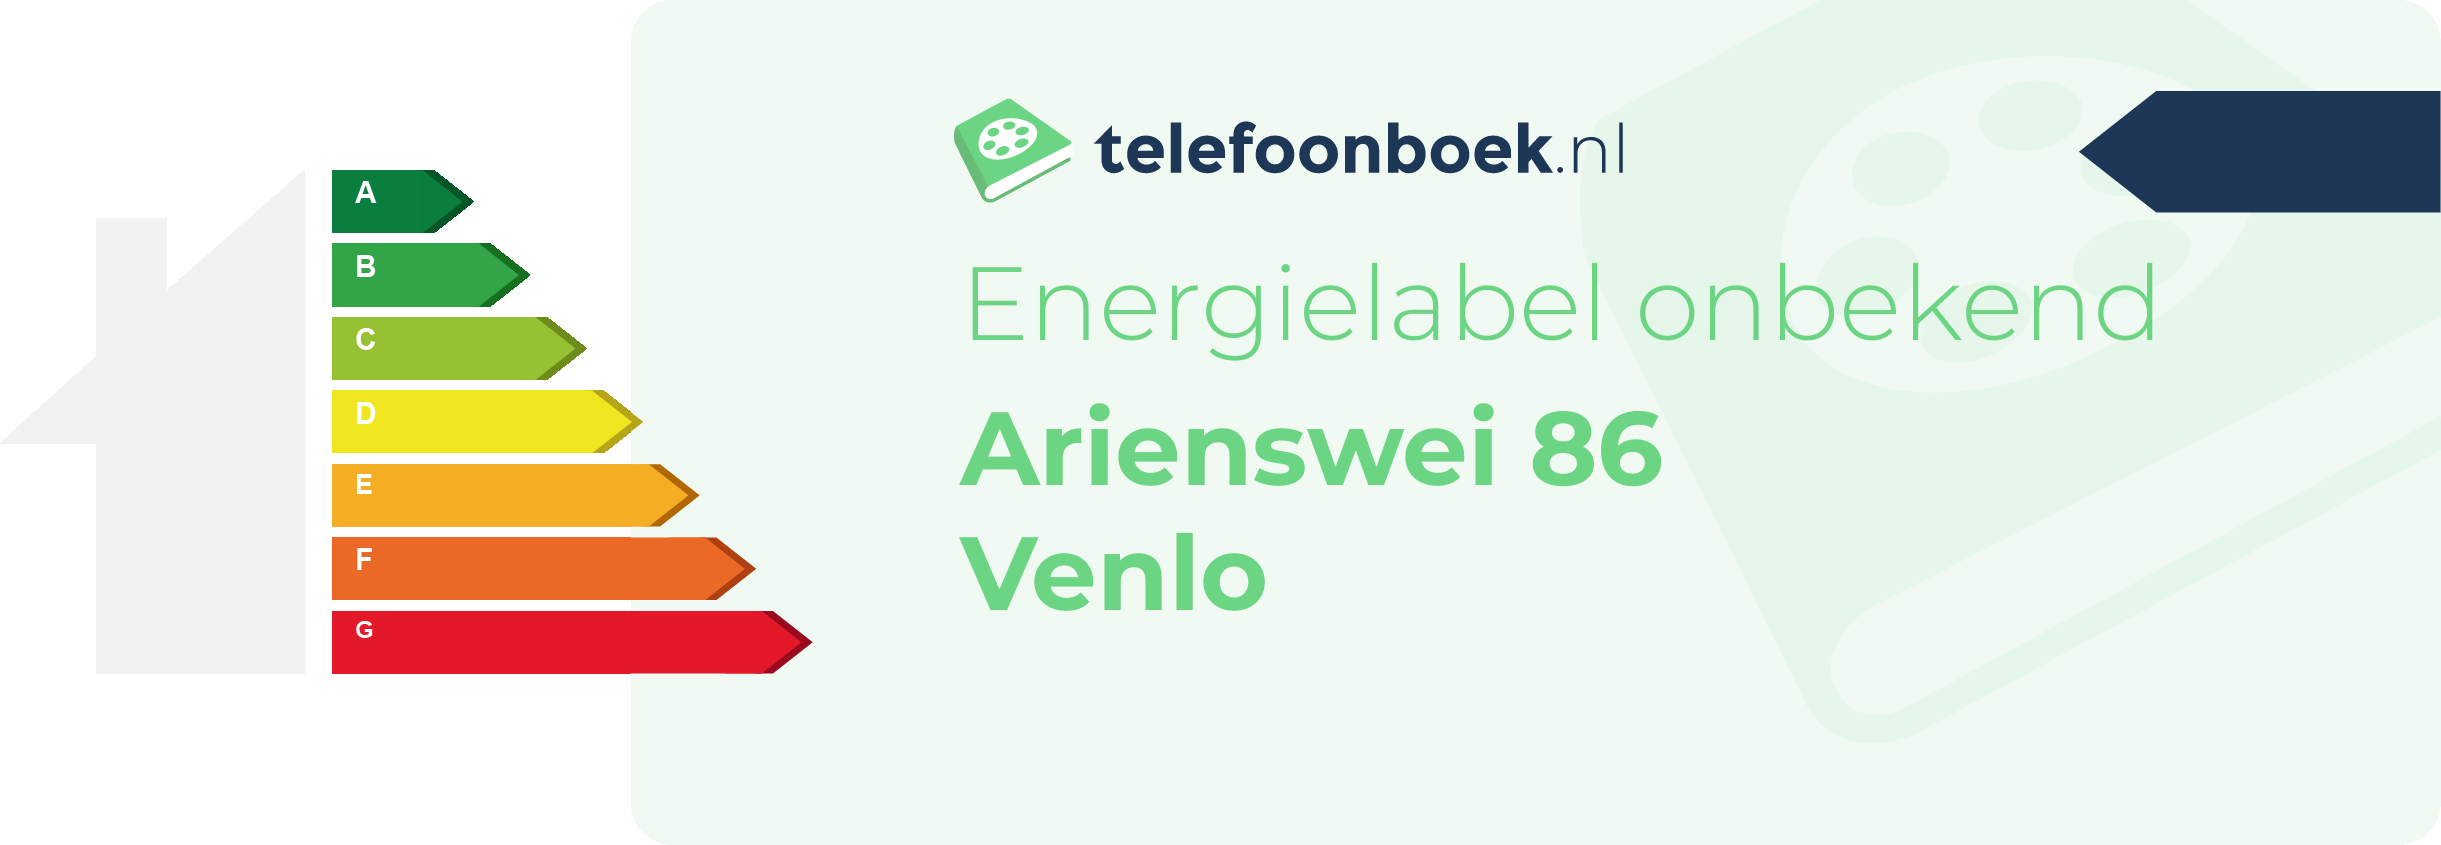 Energielabel Arienswei 86 Venlo